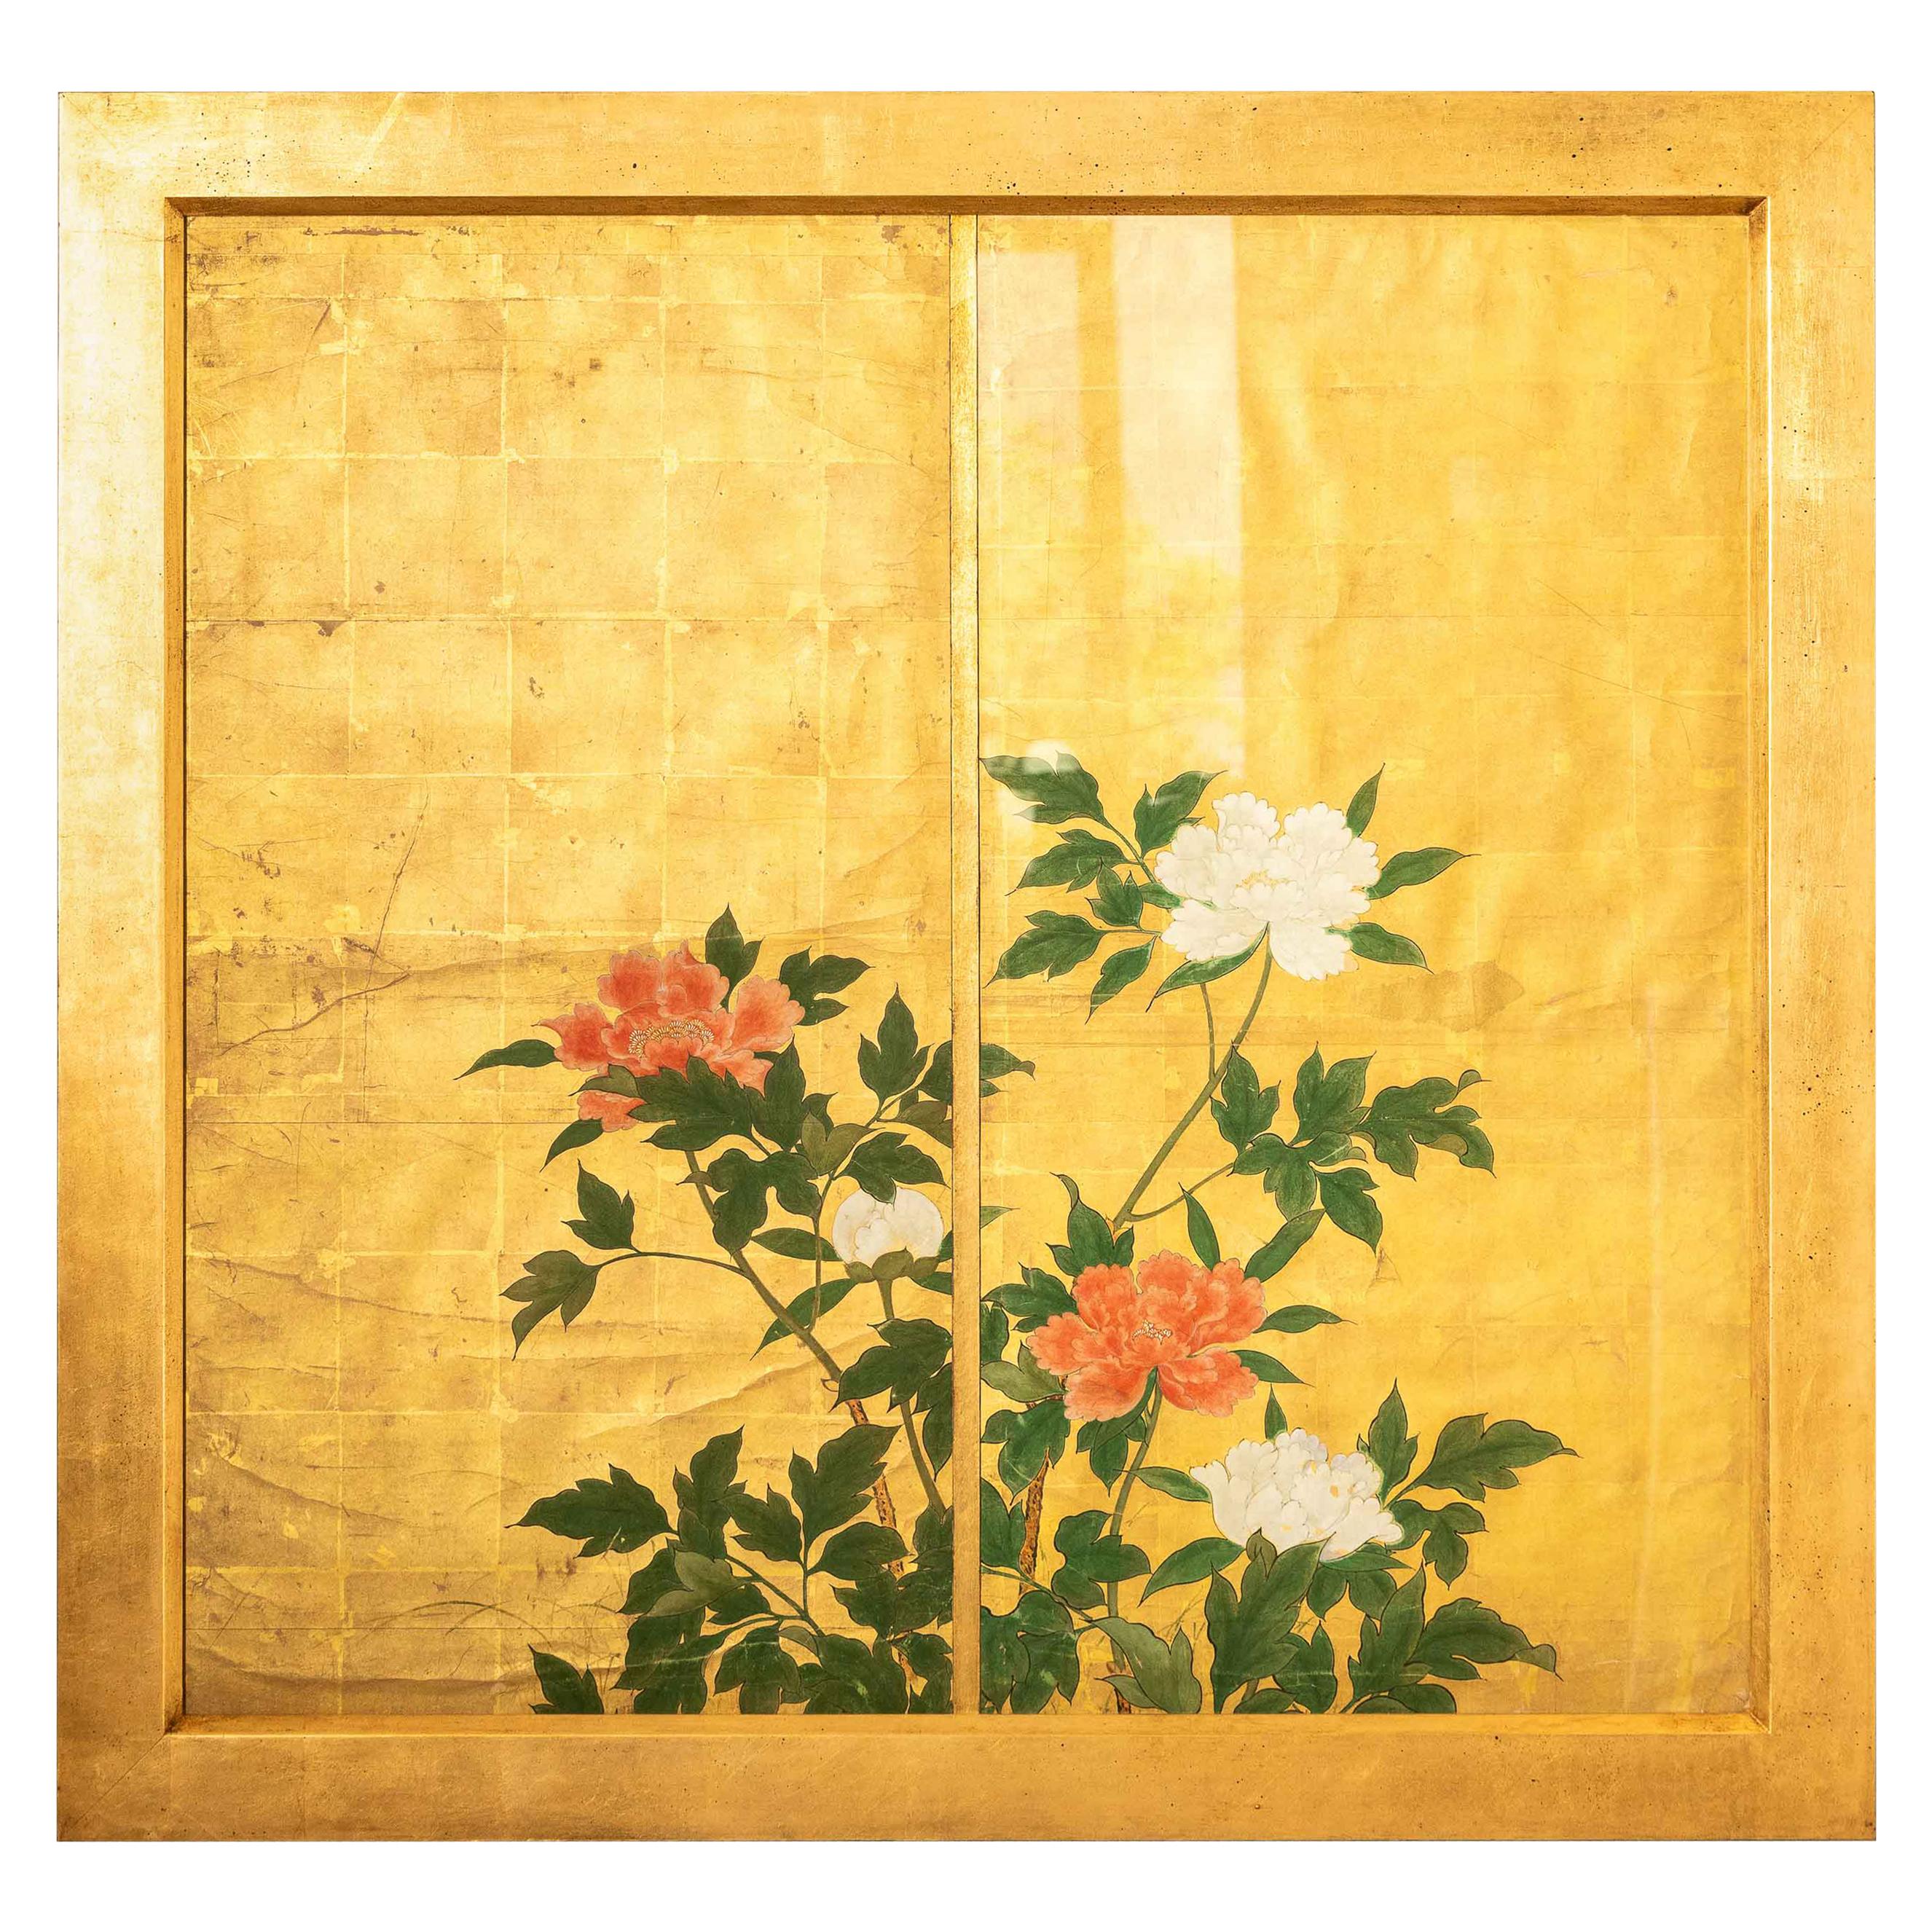 Peinture japonaise du 18e siècle représentant des pivoines rouges et blanches sur fond de feuilles d'or